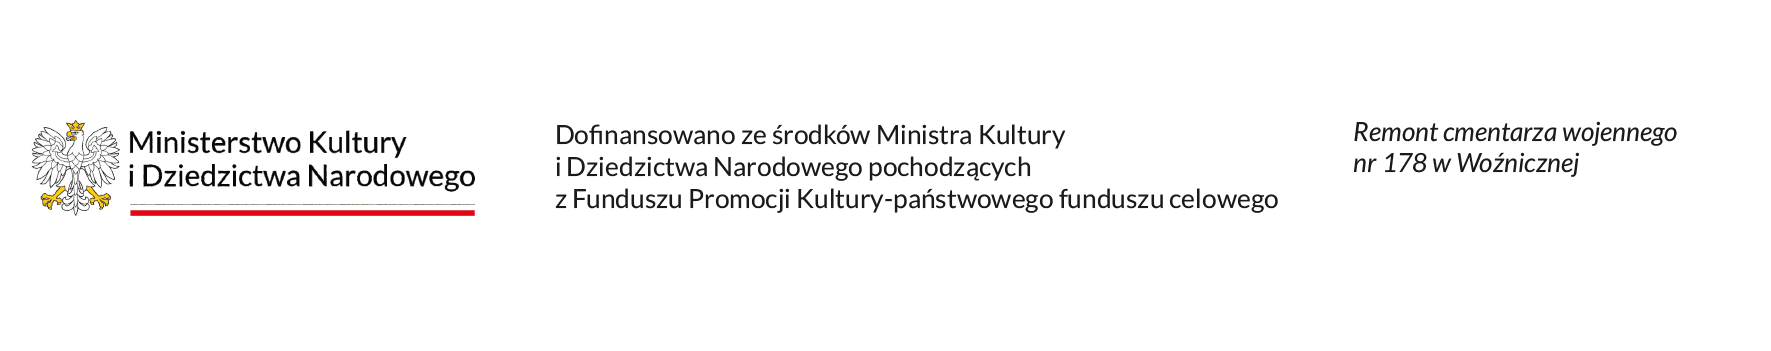 Logo Ministerstwa Kultury i Dziedzictwa Narodowego i informacja o dofinansowaniu